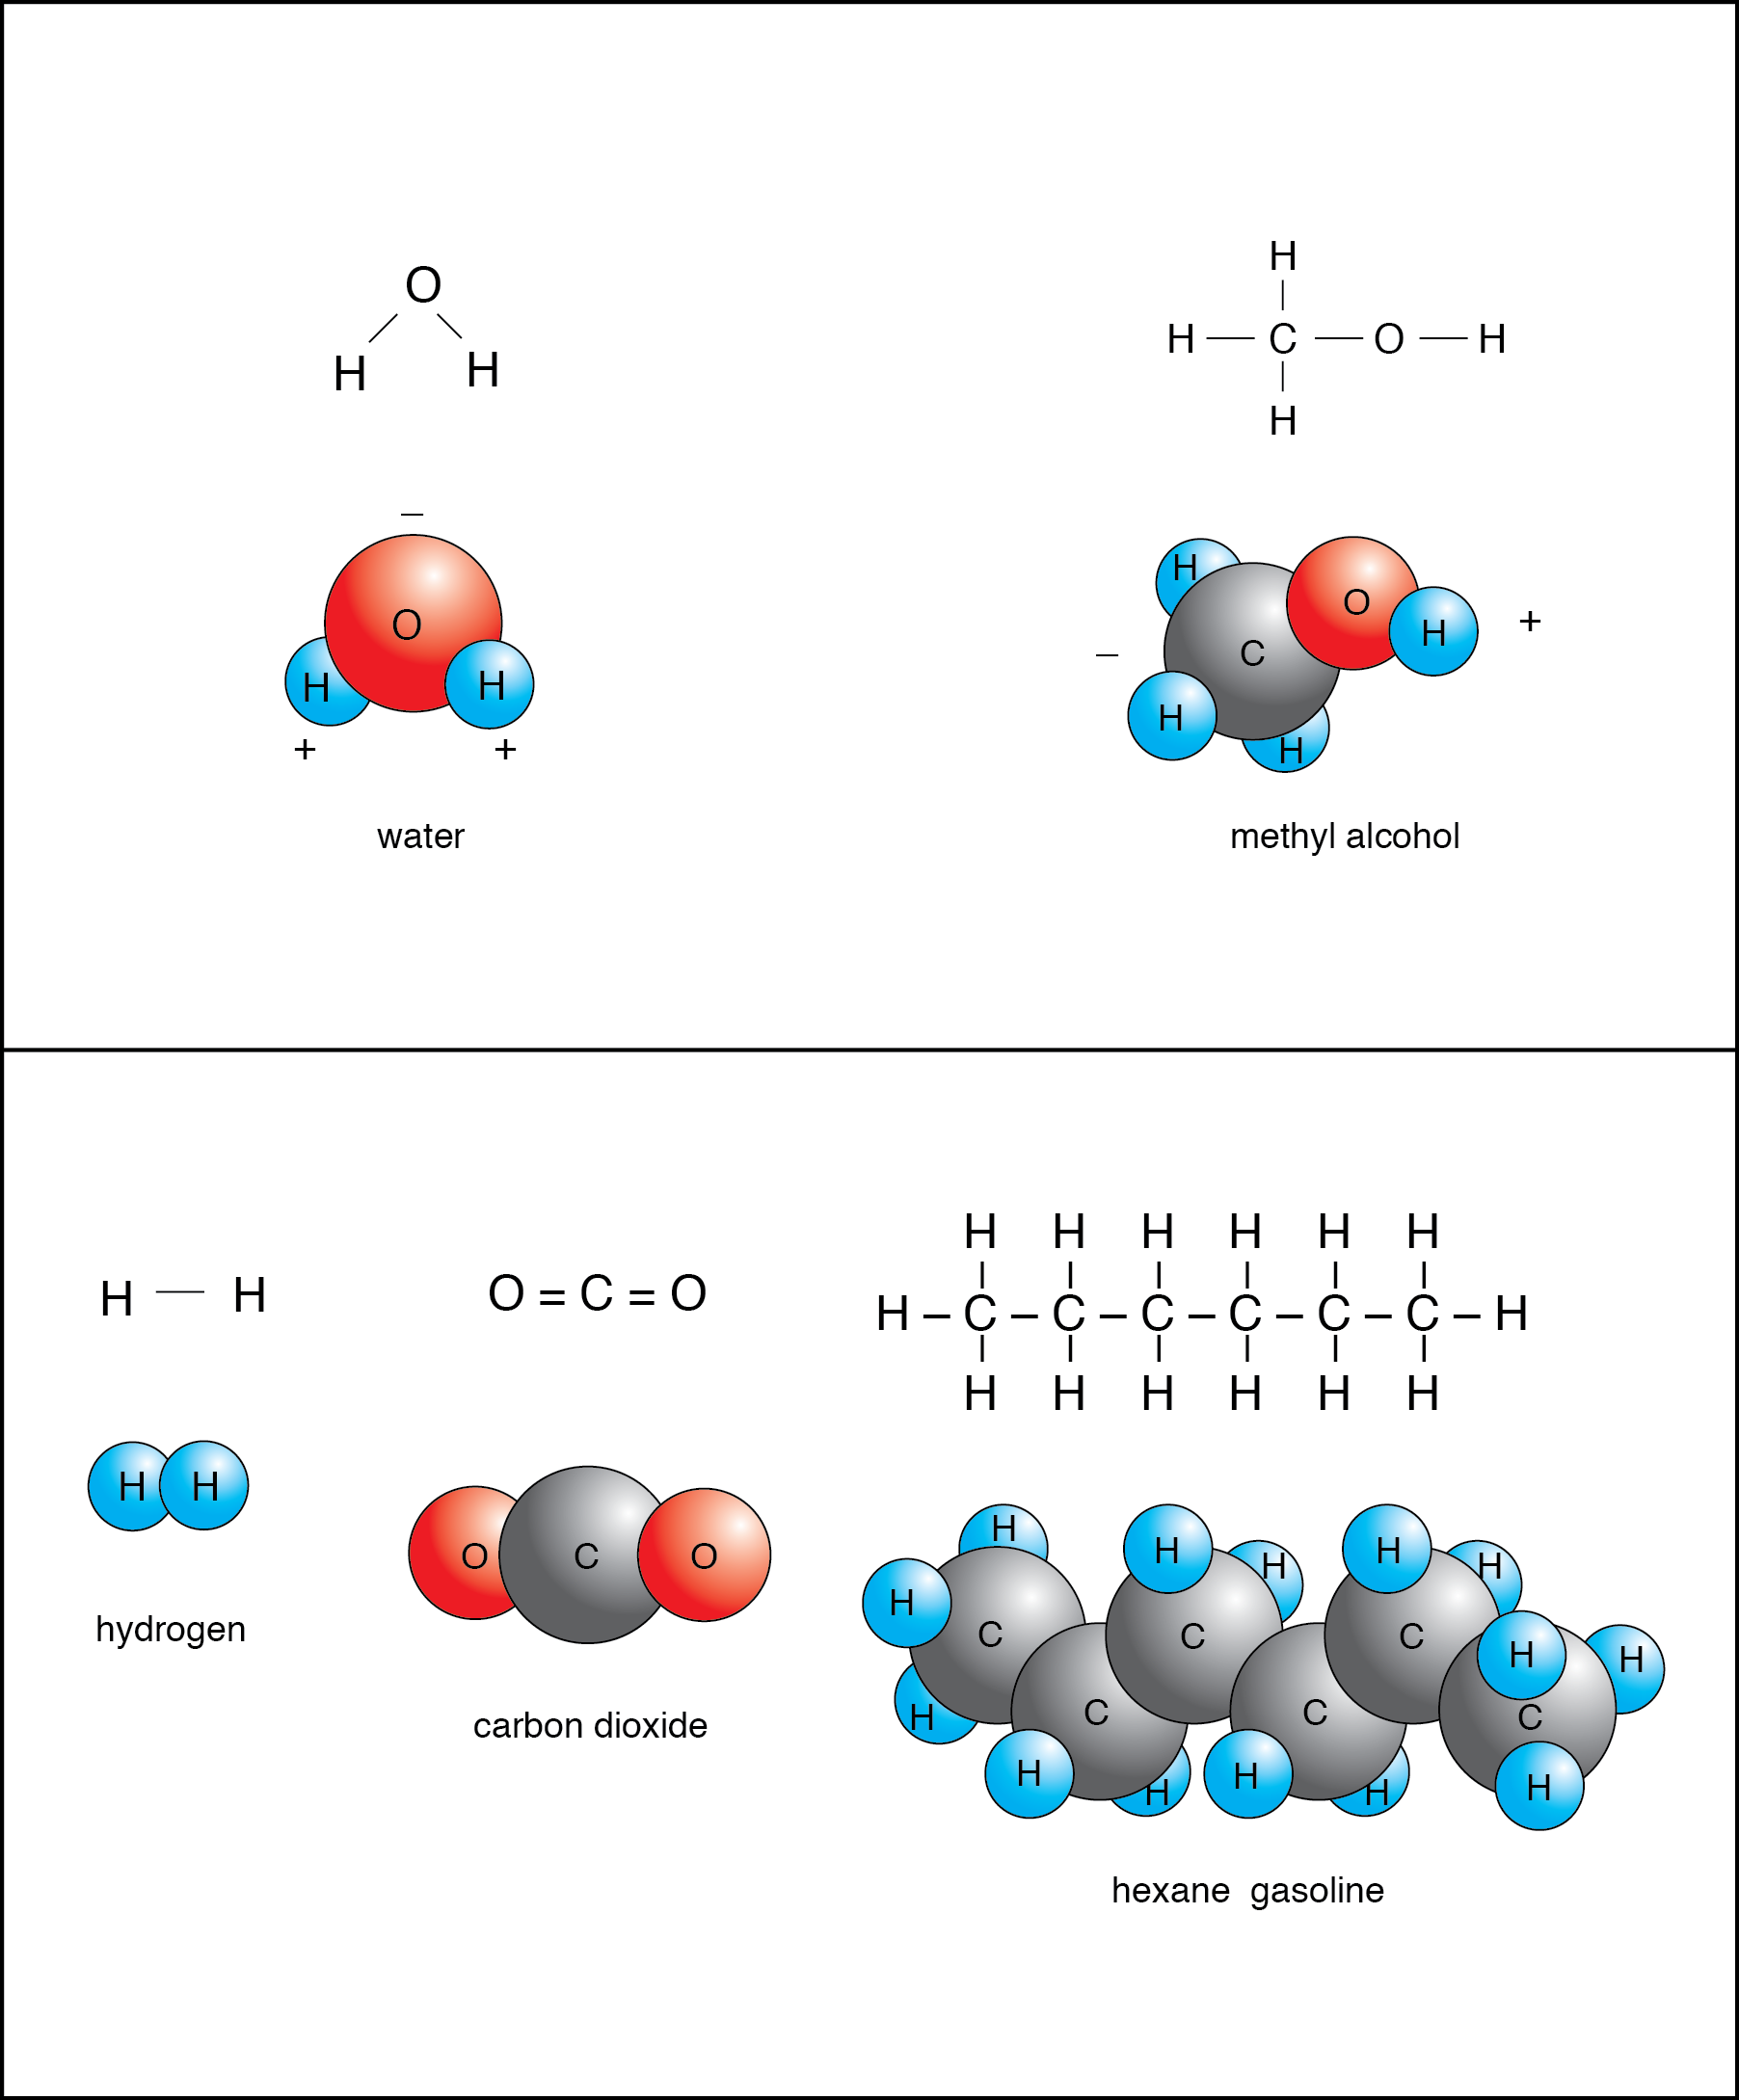 Is NH3 a polar or a non-polar molecule?